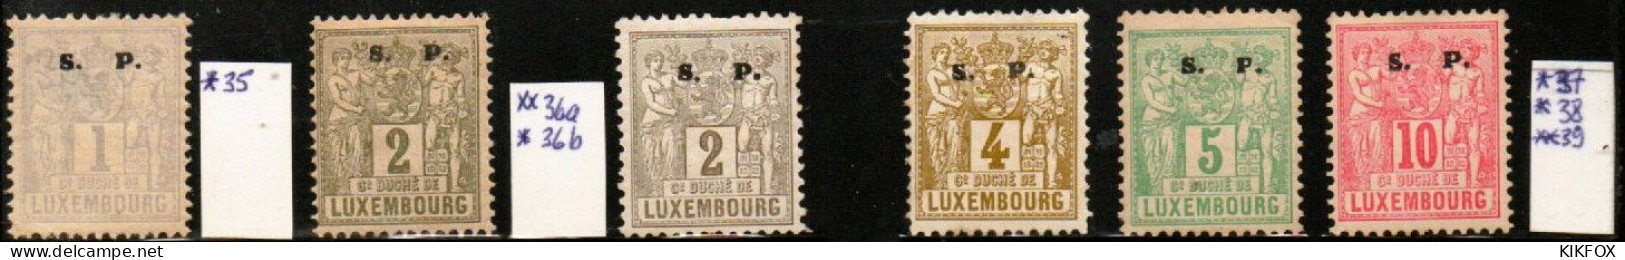 Luxembourg , Luxemburg ,1882, MI 35 - 39   FREIMARKEN ALLEGORIE, S.P LARGE, UNGEBRAUCHT, CHARNIERE - Officials